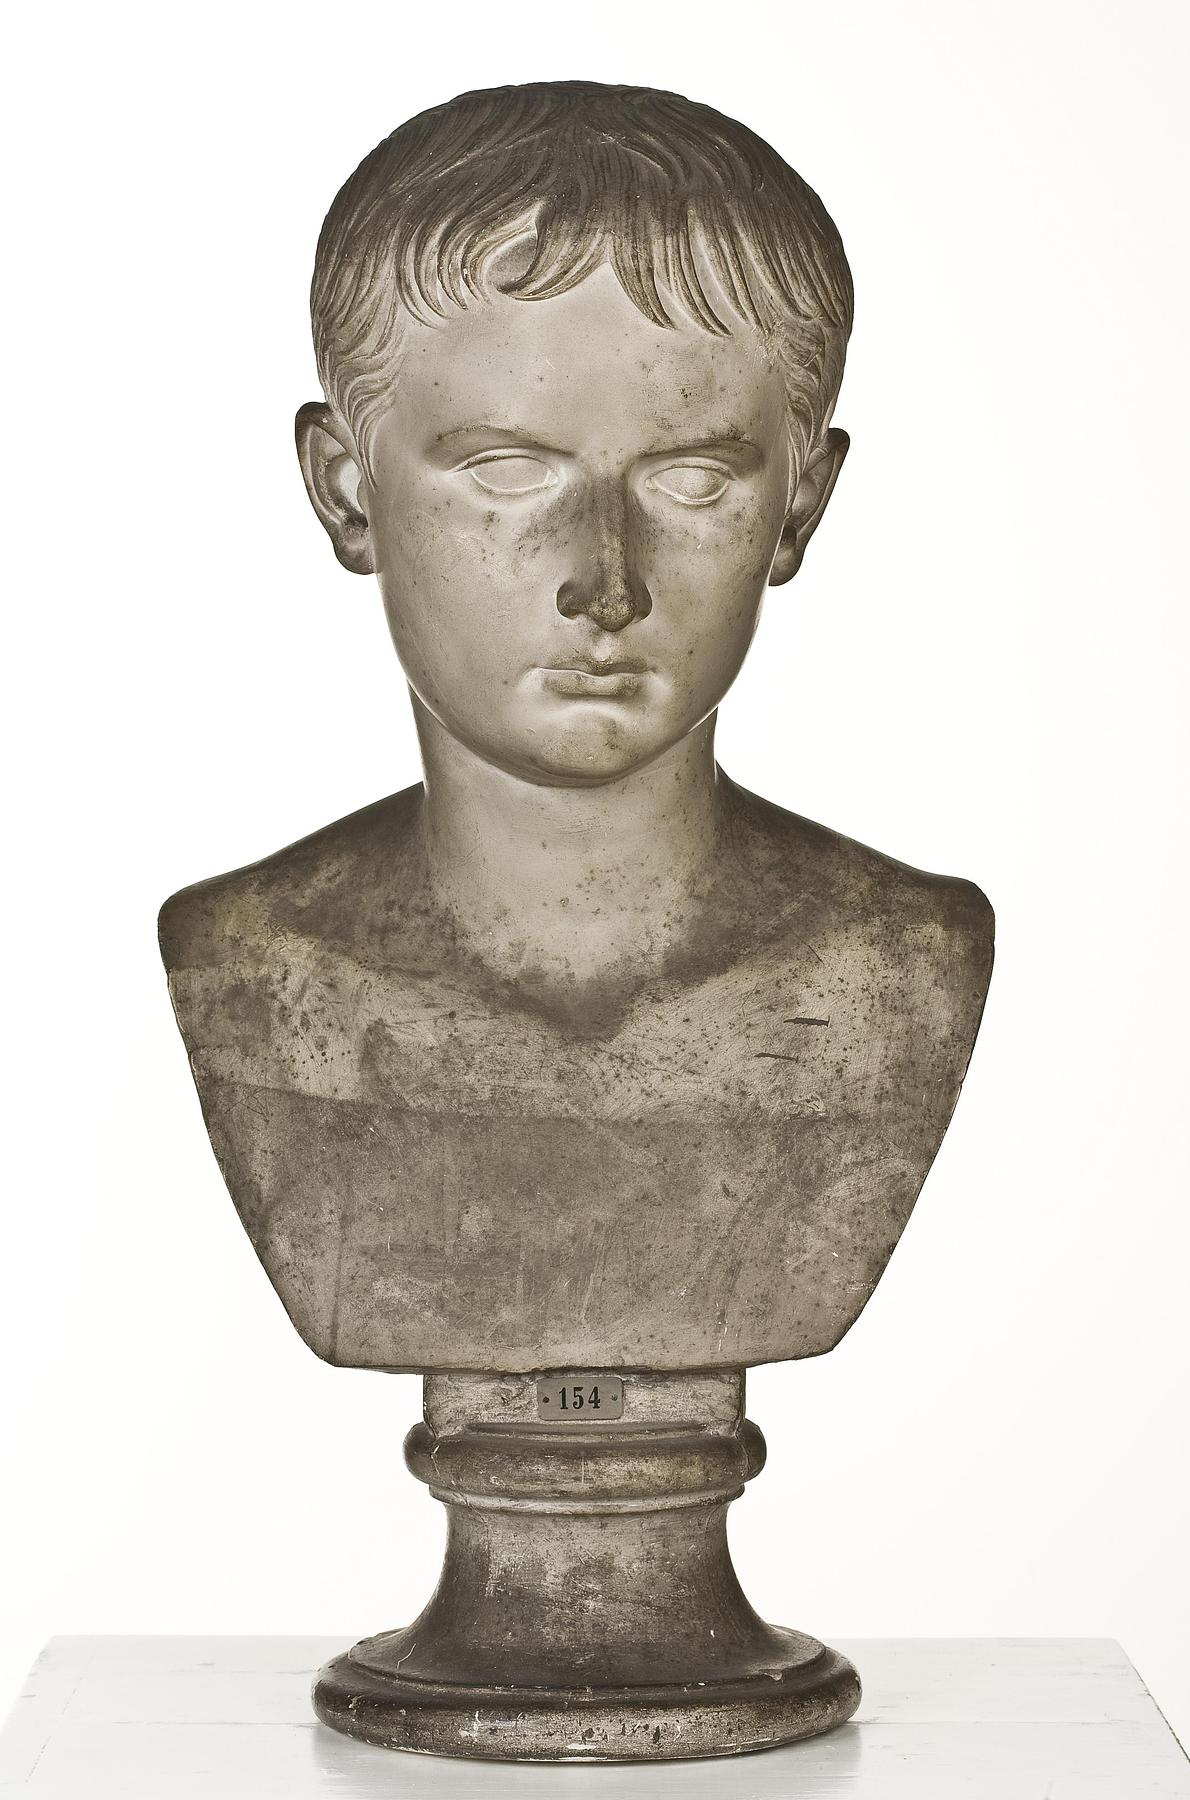 Julius Cæsar Octavianus, L154